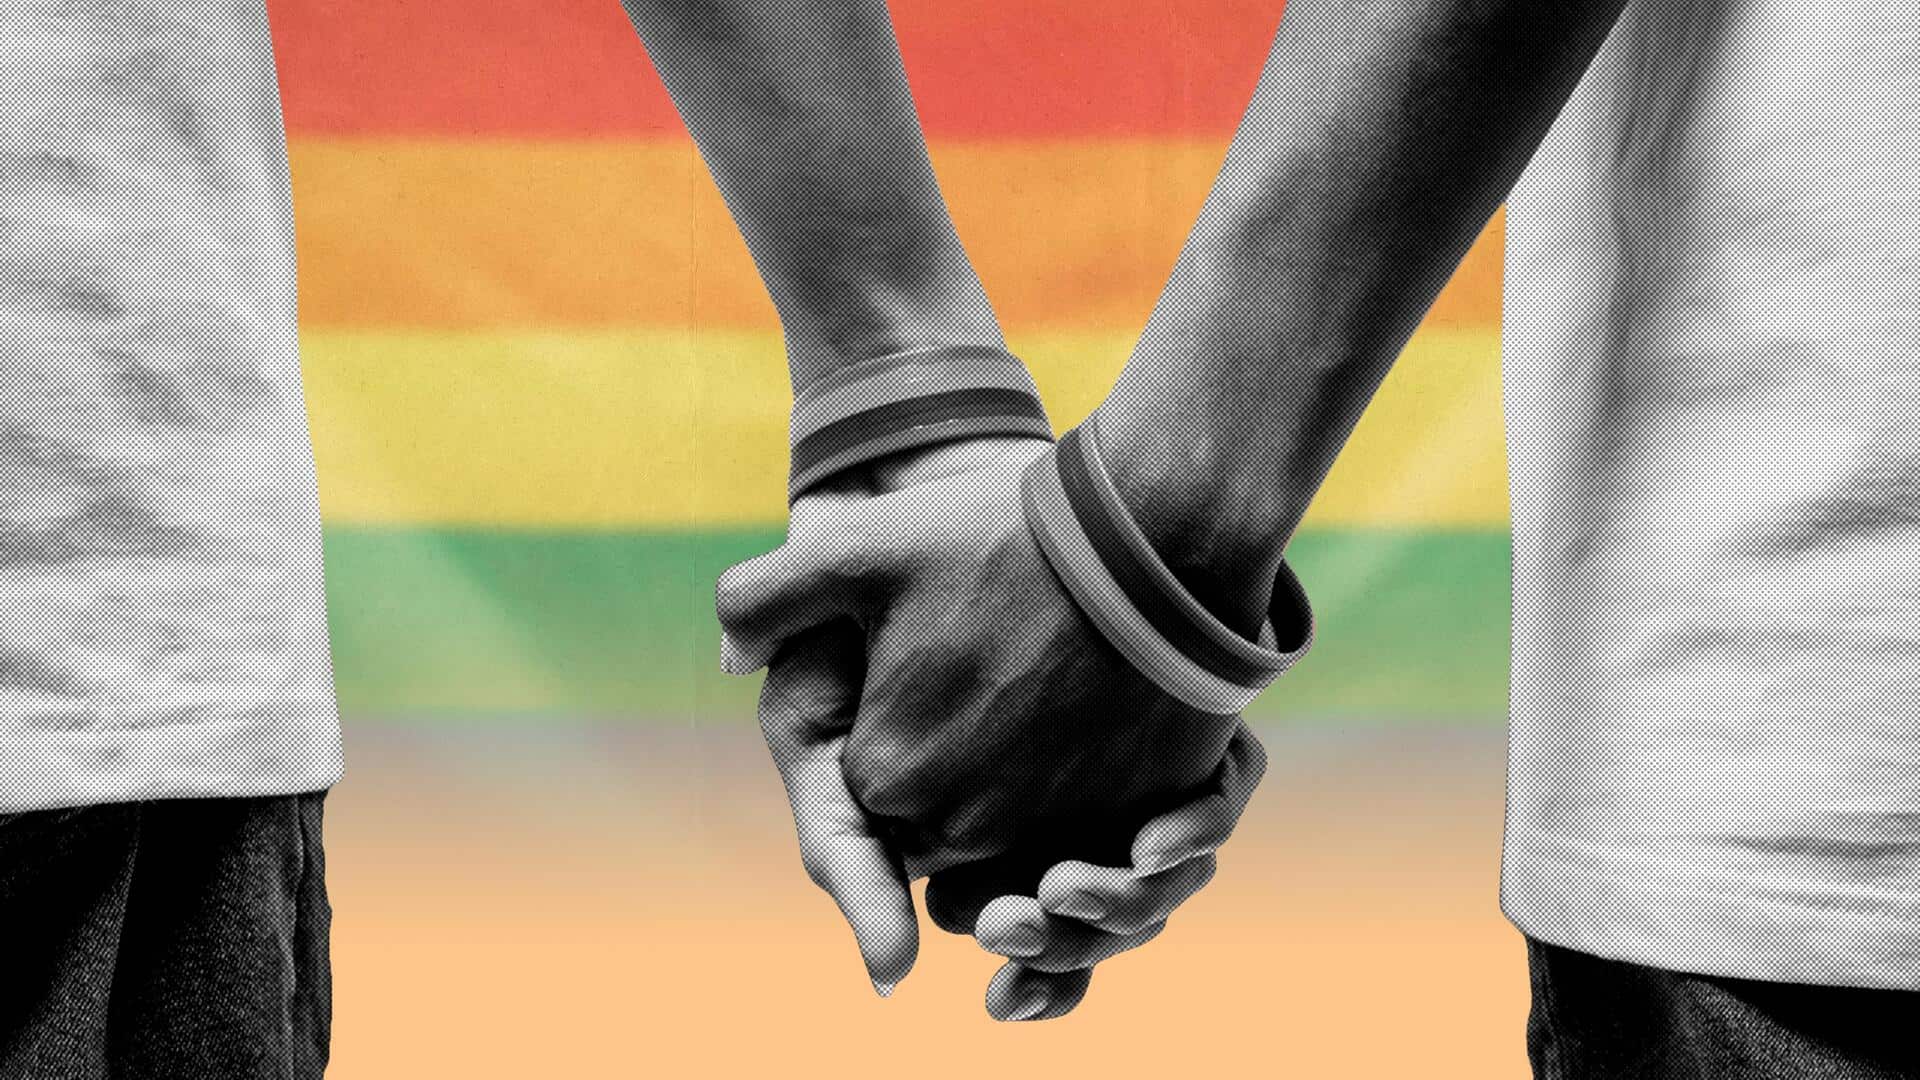 सुप्रीम कोर्ट ने सरकार से पूछा- विवाह के बिना समलैंगिक जोड़ों को कैसे मिलेंगे सामाजिक लाभ